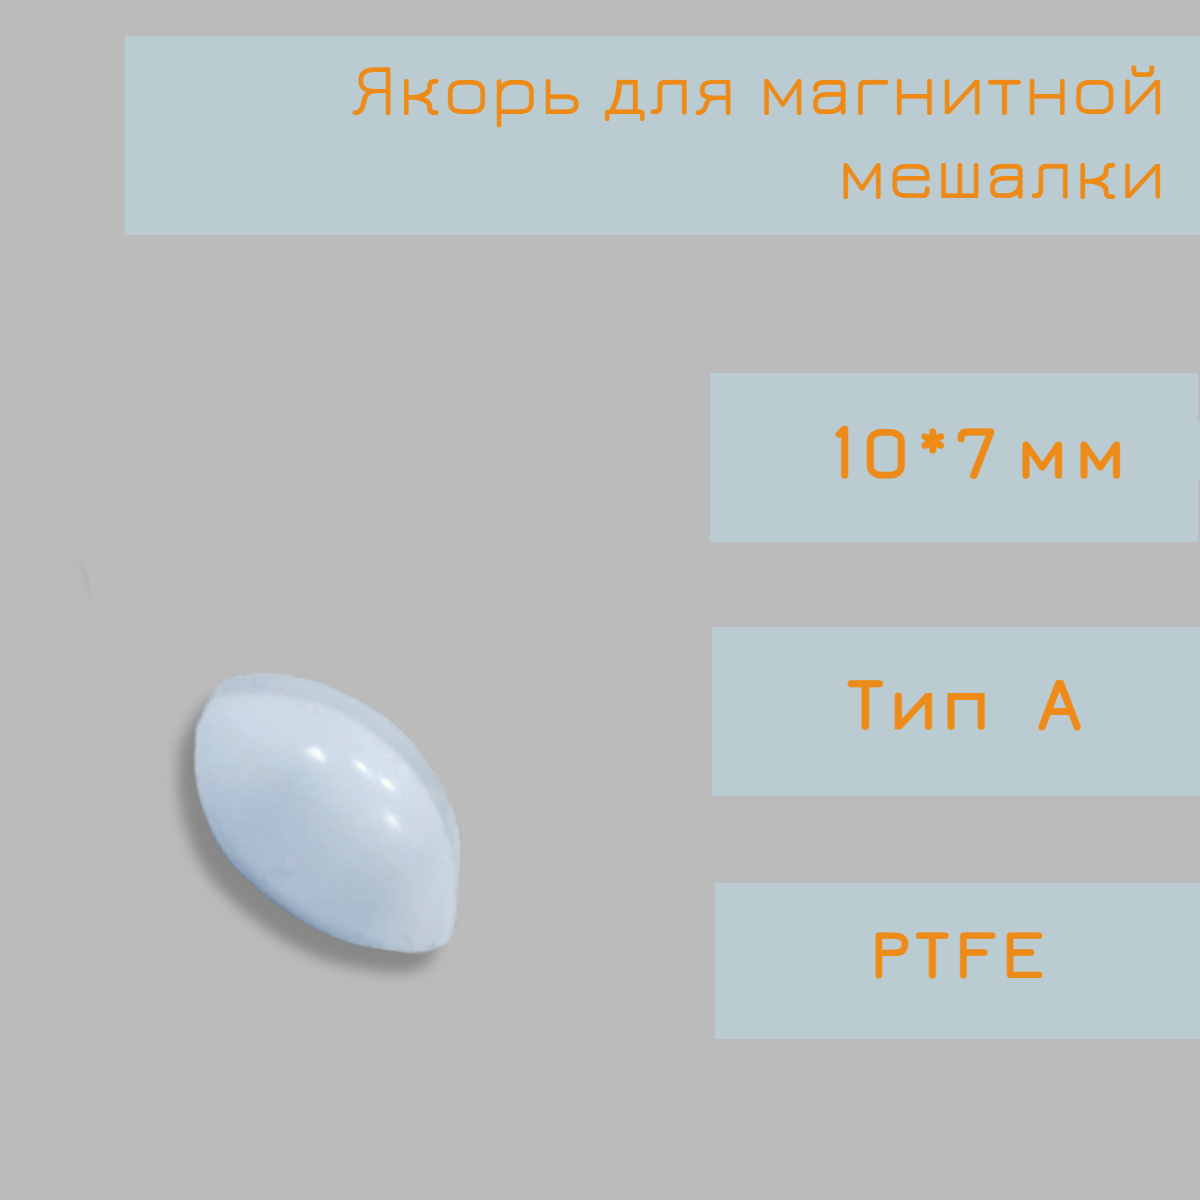 Якорь для магнитной мешалки, 10*7 мм, тип А, эллипсоид, PTFE, птфэ